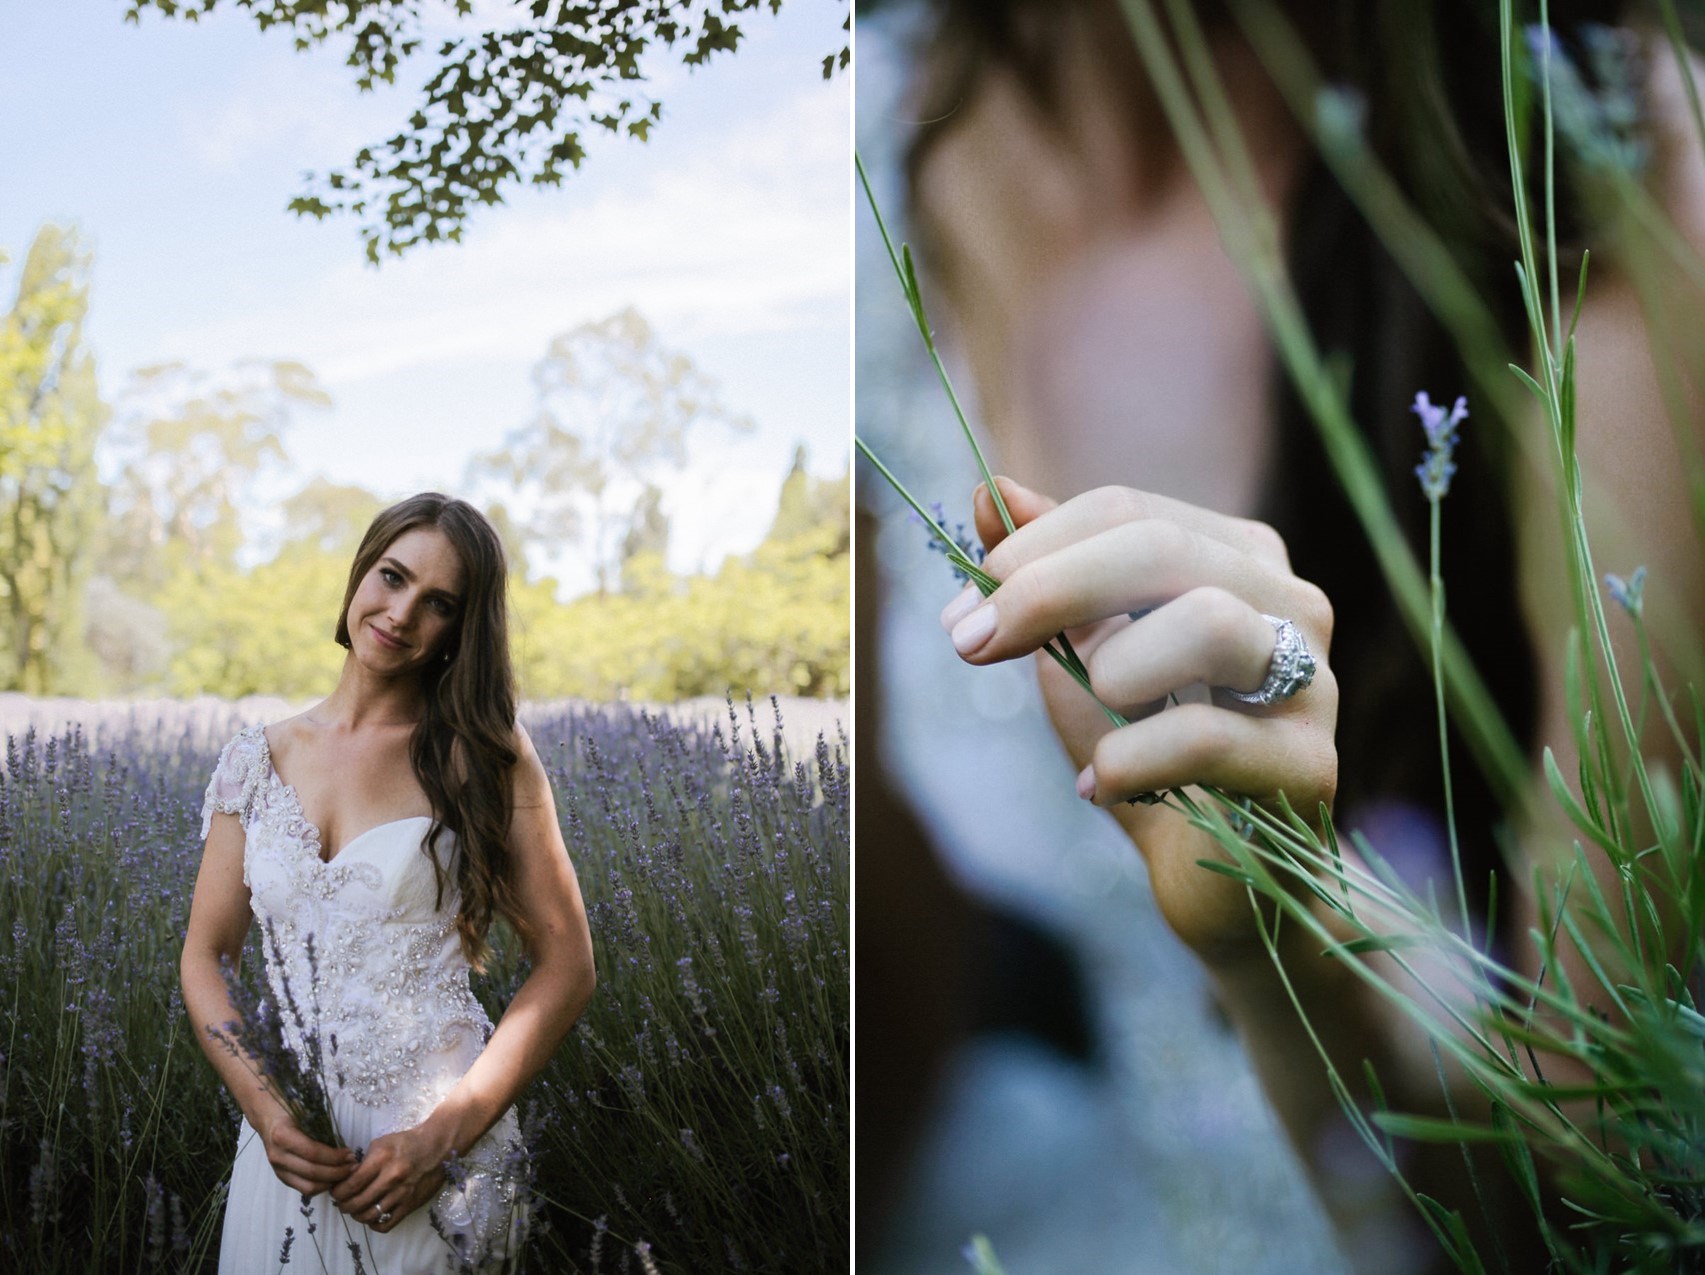 Lavender farm bridal portraits // Photography by Brown Paper Parcel